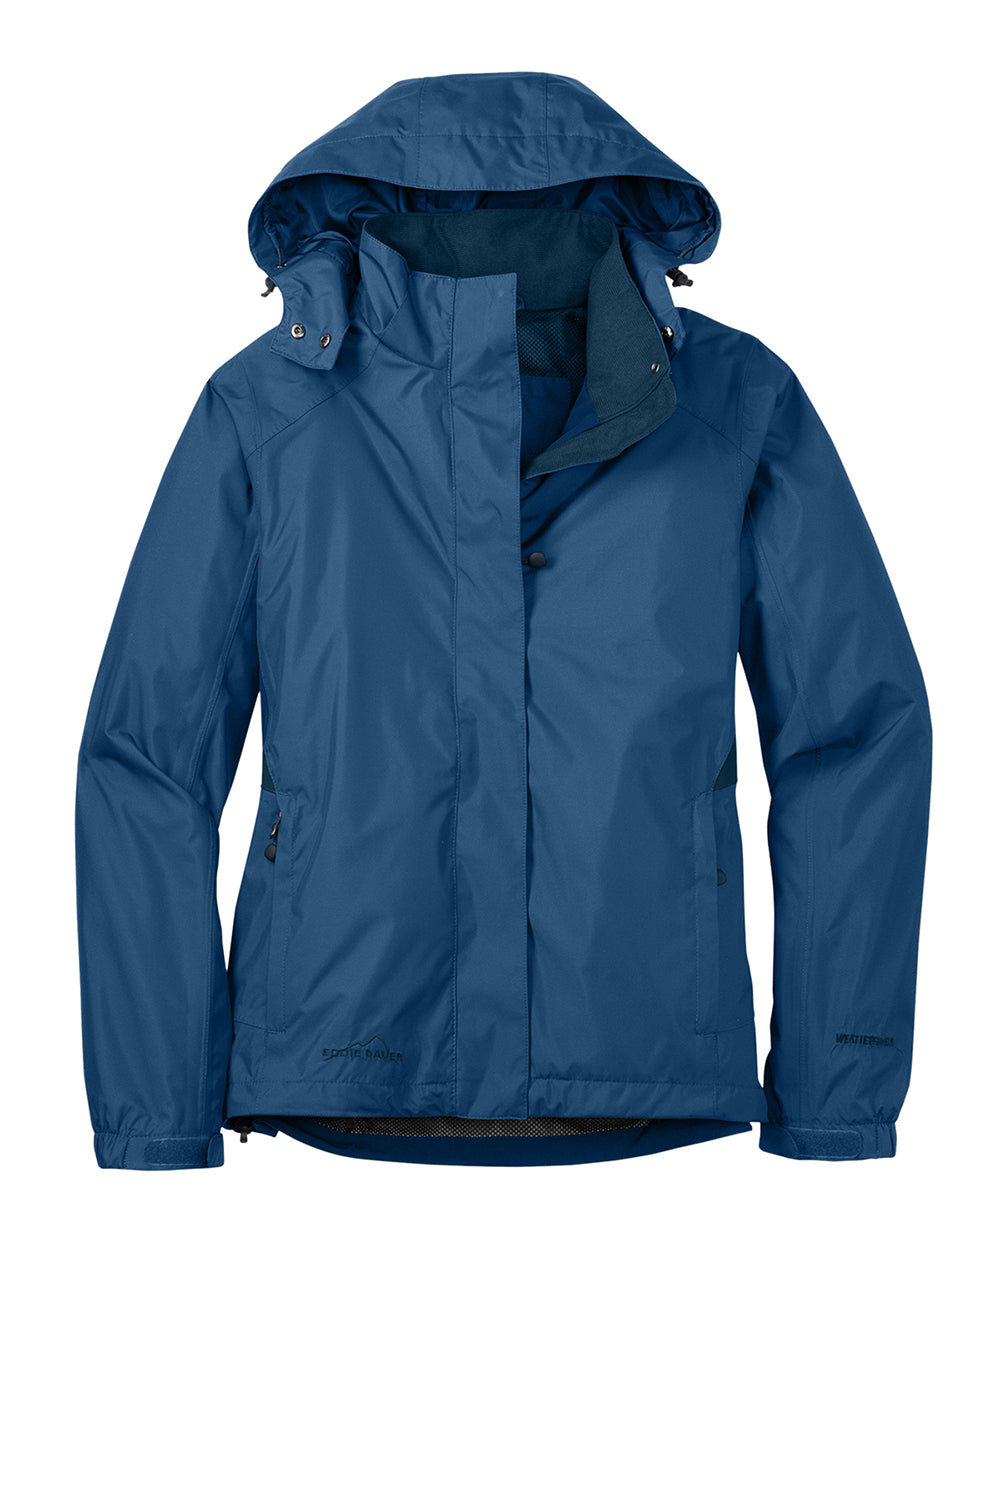 Eddie Bauer EB551 Womens Waterproof Full Zip Hooded Jacket Deep Sea Blue Flat Front